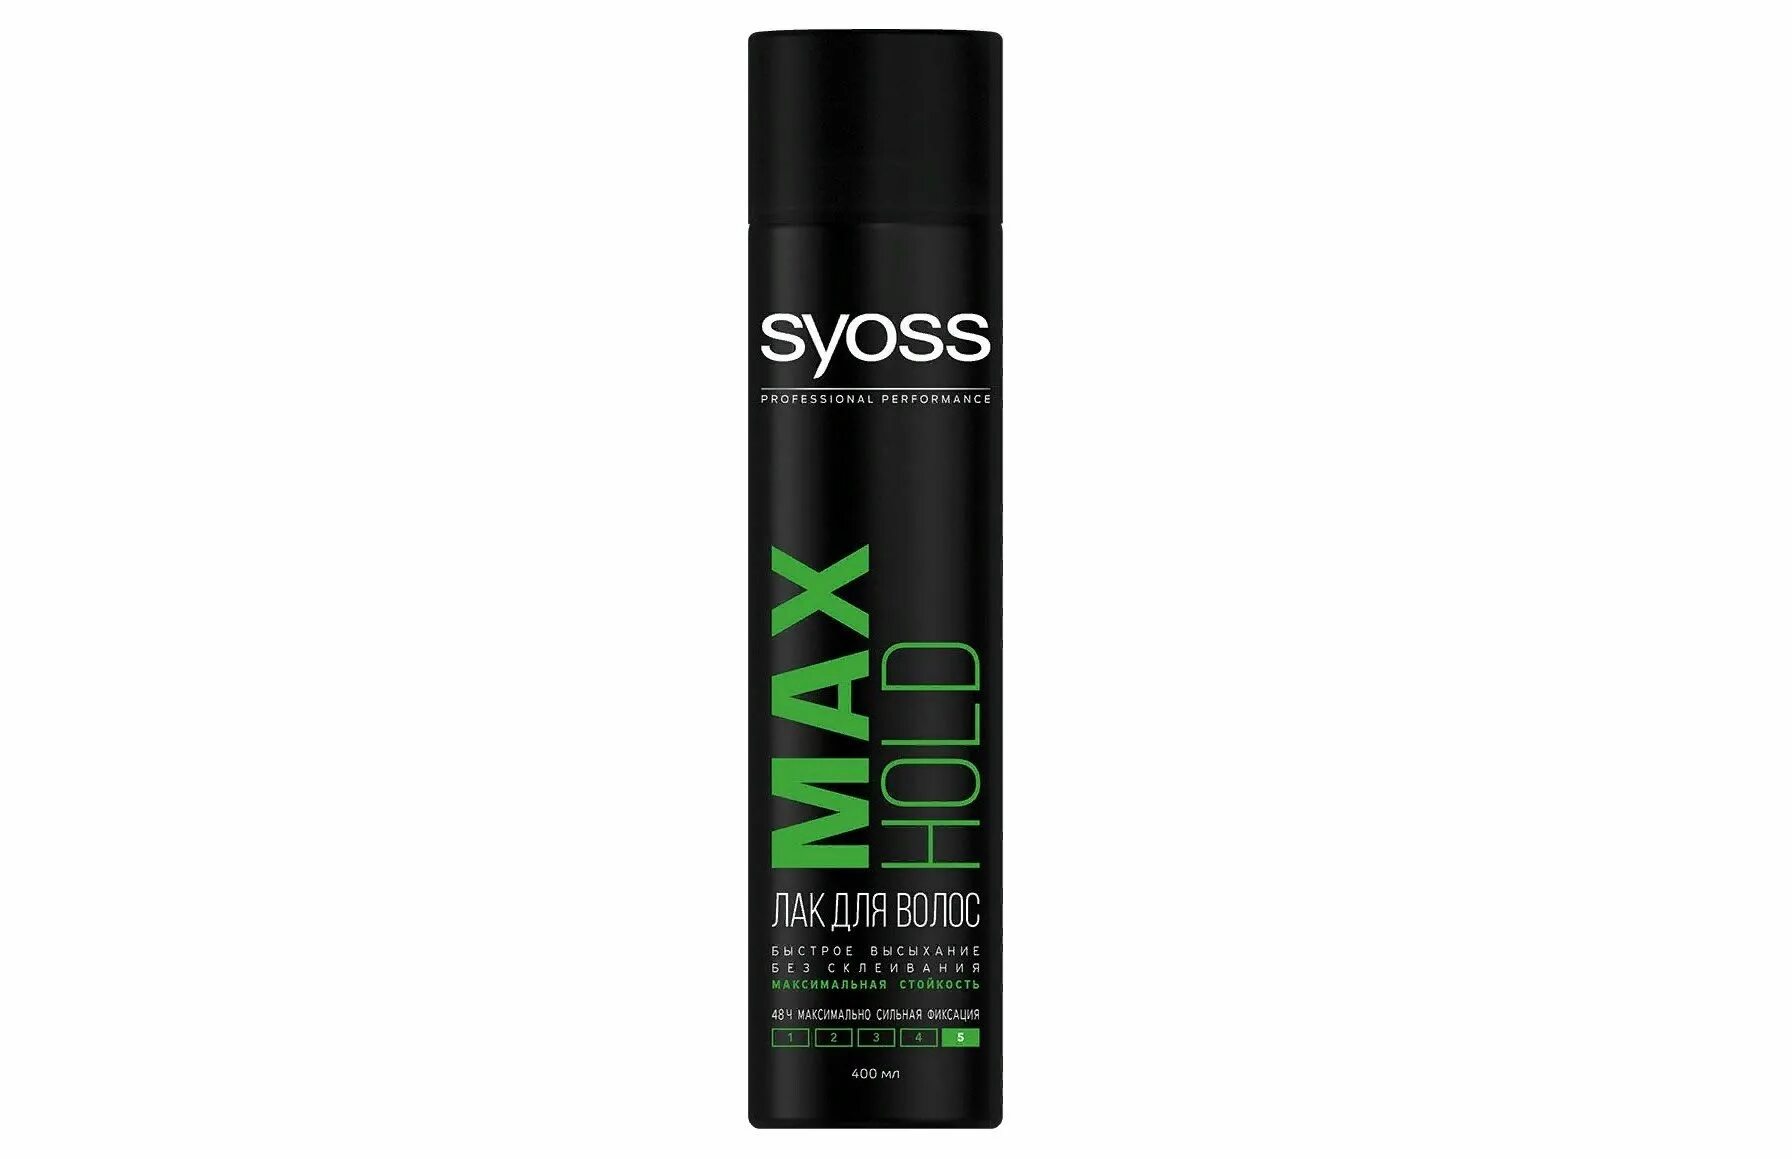 Укладка без склеивания. Лак для волос Syoss 400 мл. Лак для волос Syoss 75 мл. Лак Syoss Mini Max hold максимально сильной фиксации для волос 75 мл. Syoss лак для волос Max hold, экстрасильная фиксация.